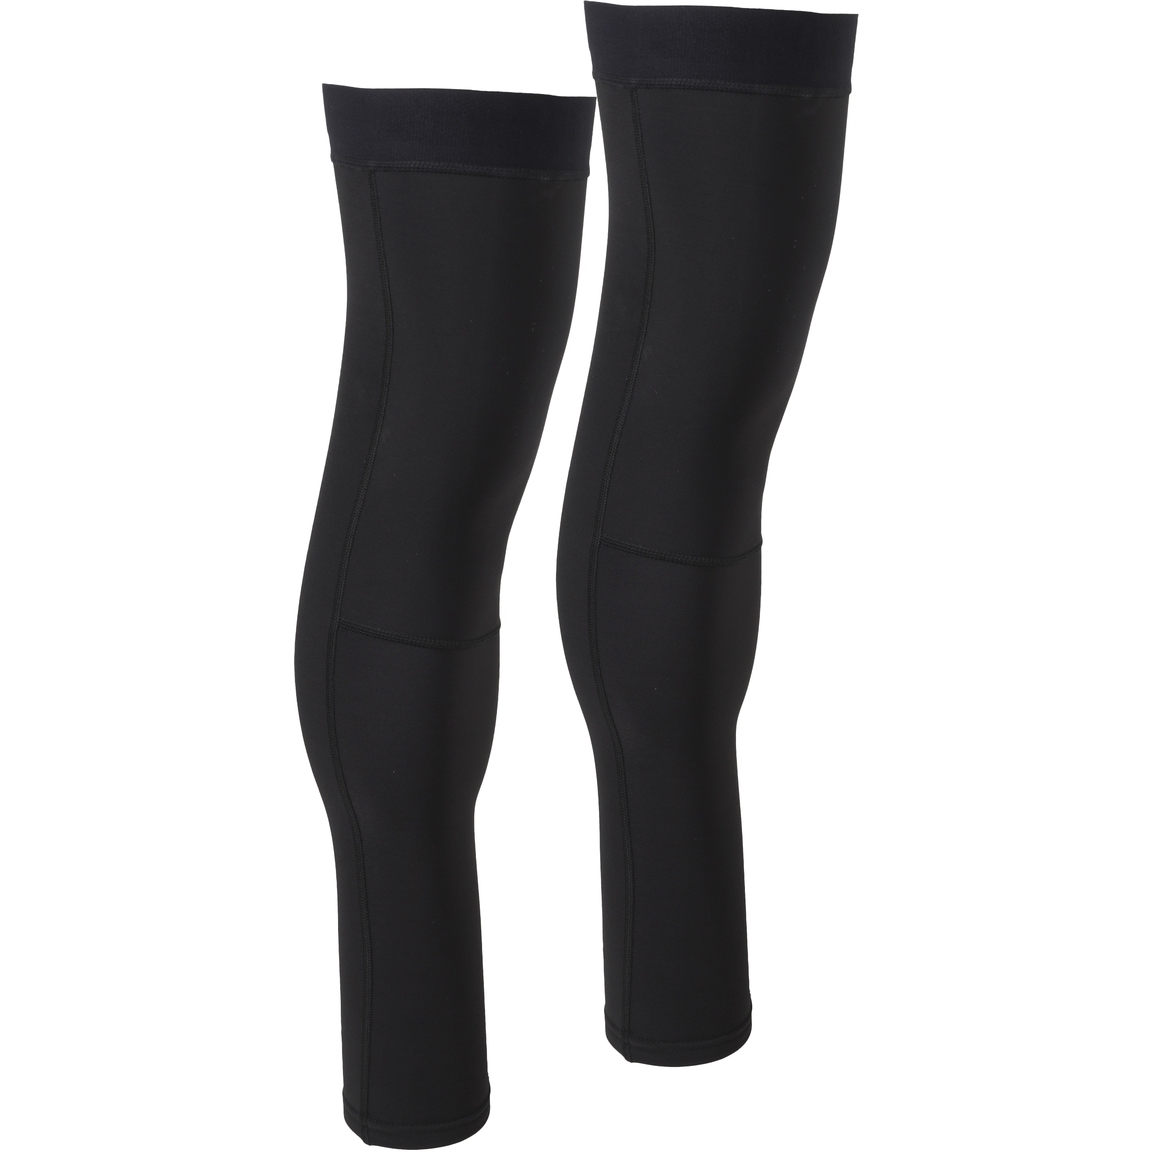 Productfoto van AGU Essential Leg Warmers - black